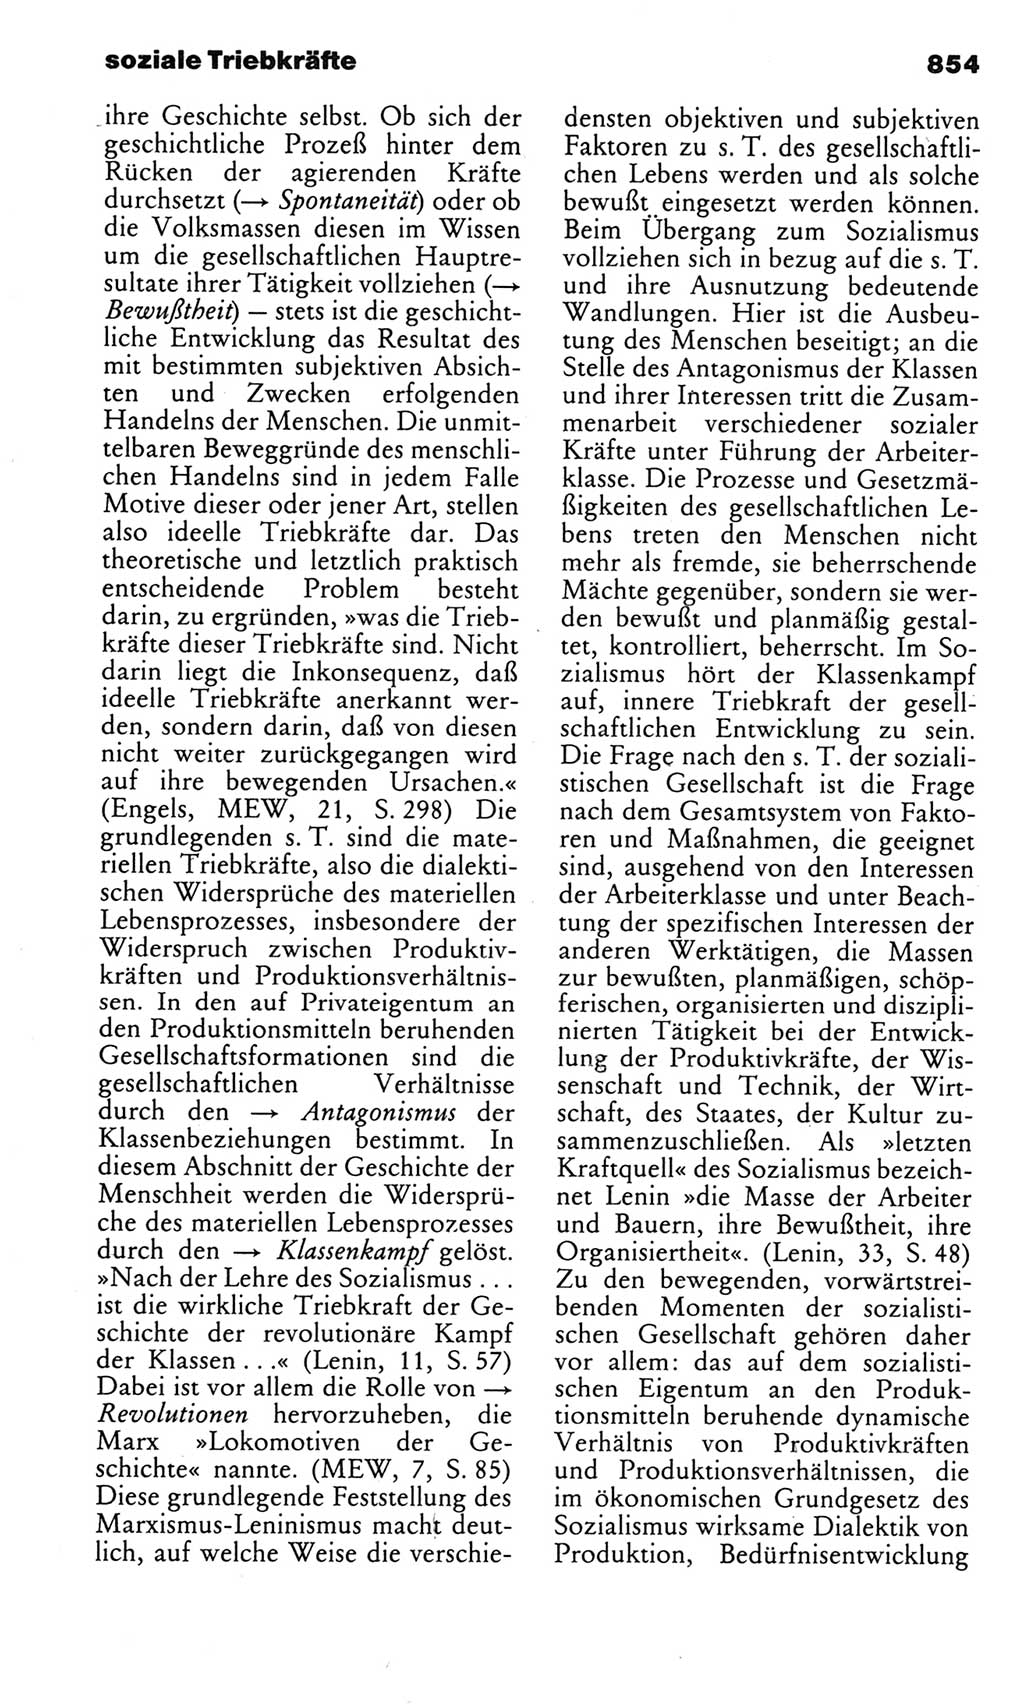 Kleines politisches Wörterbuch [Deutsche Demokratische Republik (DDR)] 1983, Seite 854 (Kl. pol. Wb. DDR 1983, S. 854)